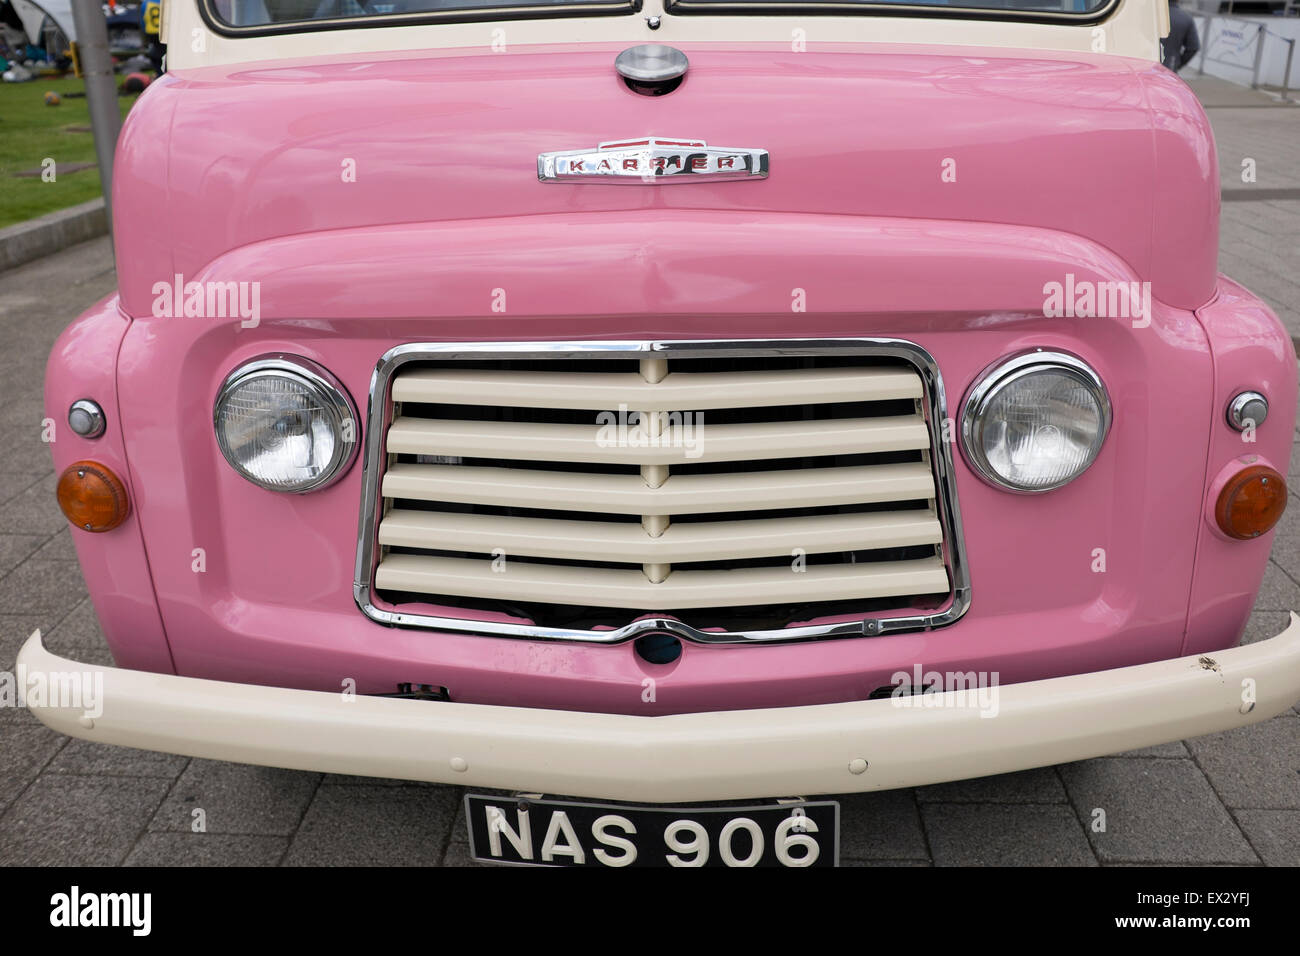 Pink Vintage Karrier Ice Cream Van Seller Vehicle Stock Photo